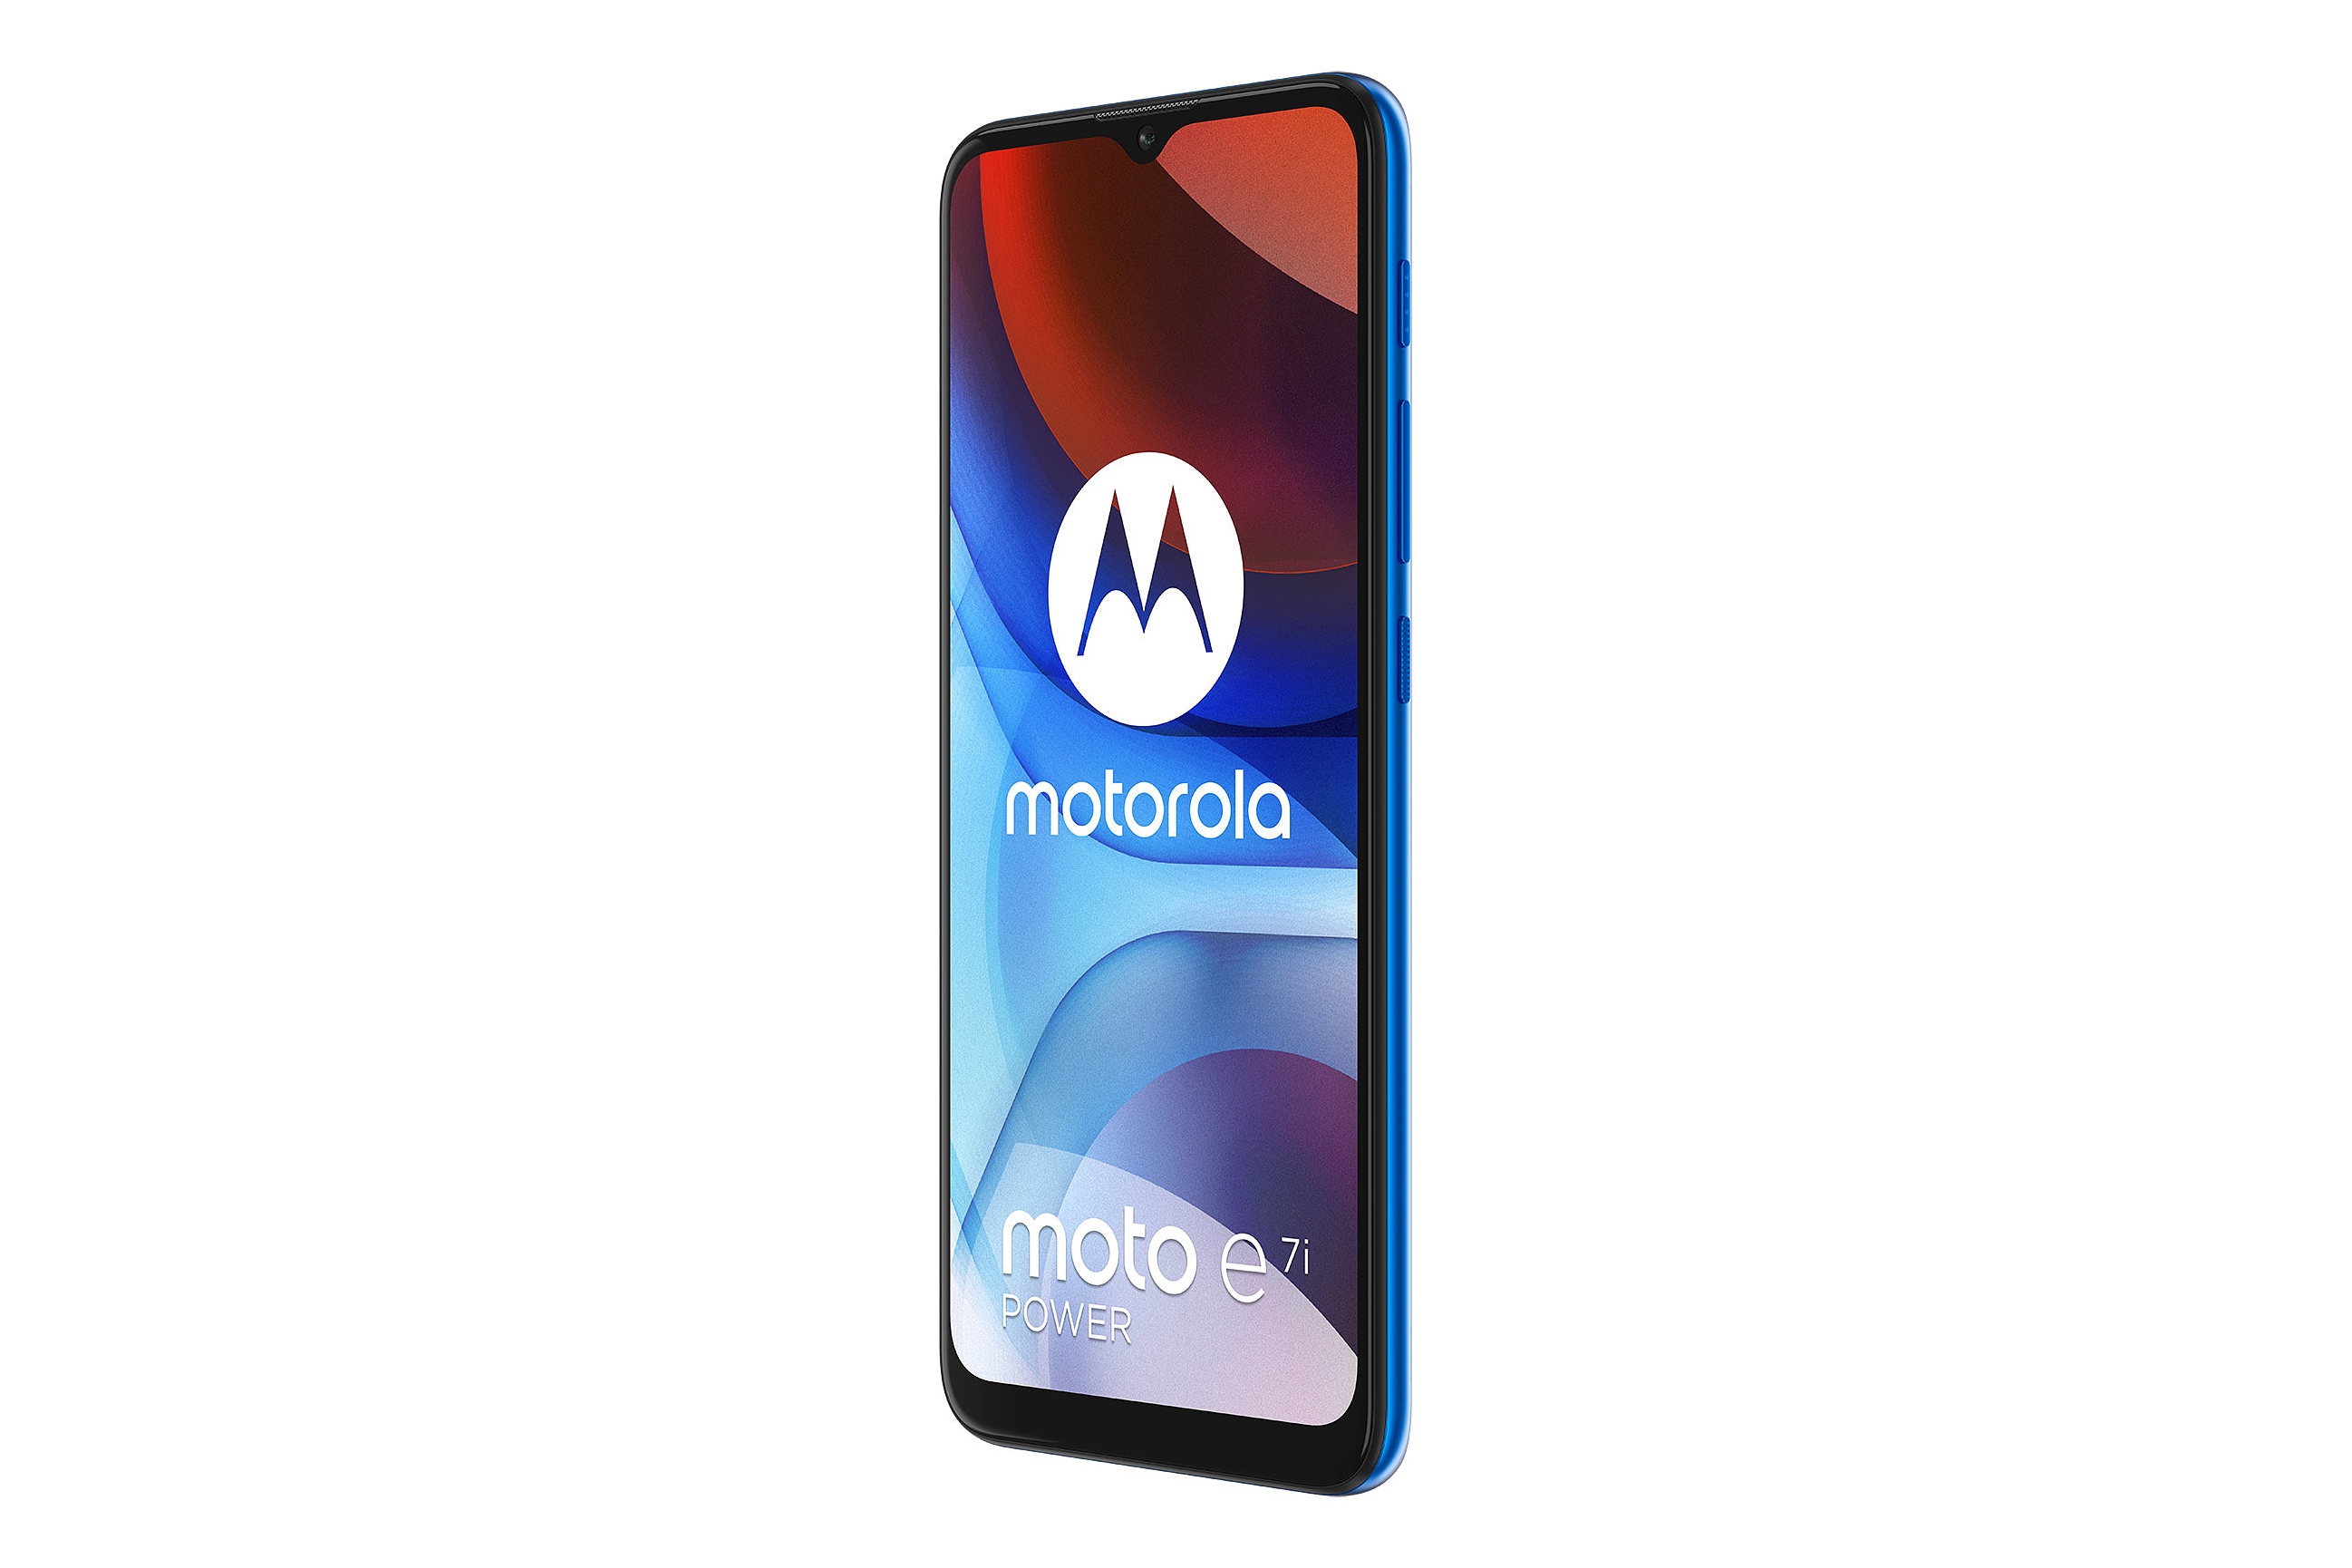 نمای راست پنل جلو گوشی موبایل موتو ای 7i پاور موتورولا / Motorola Moto E7i Power